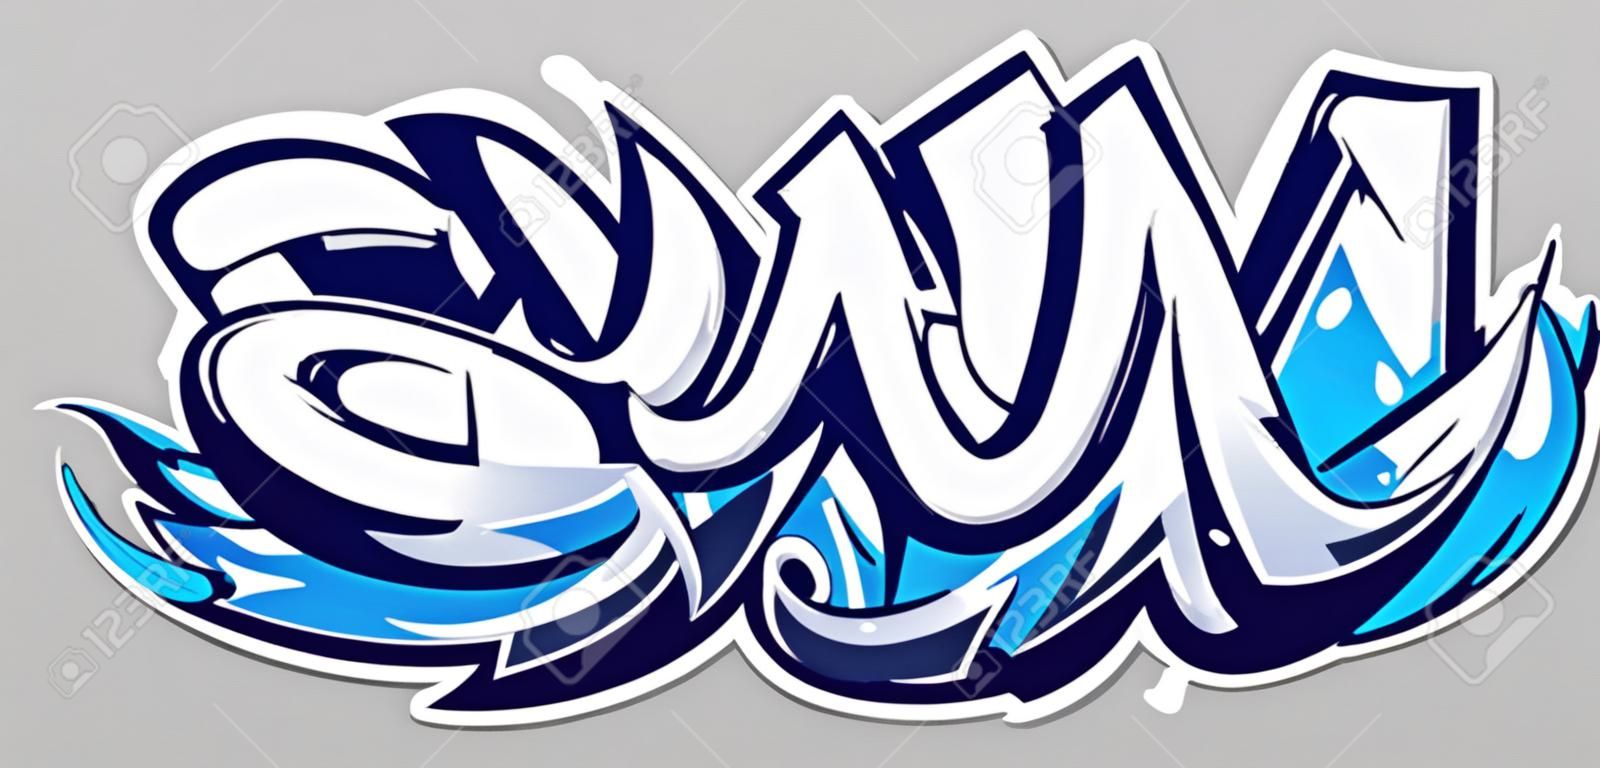 Letras de vector de color azul grande sobre fondo gris. Arte de graffiti dinámico de estilo salvaje. Ilustración abstracta de letras tridimensionales.